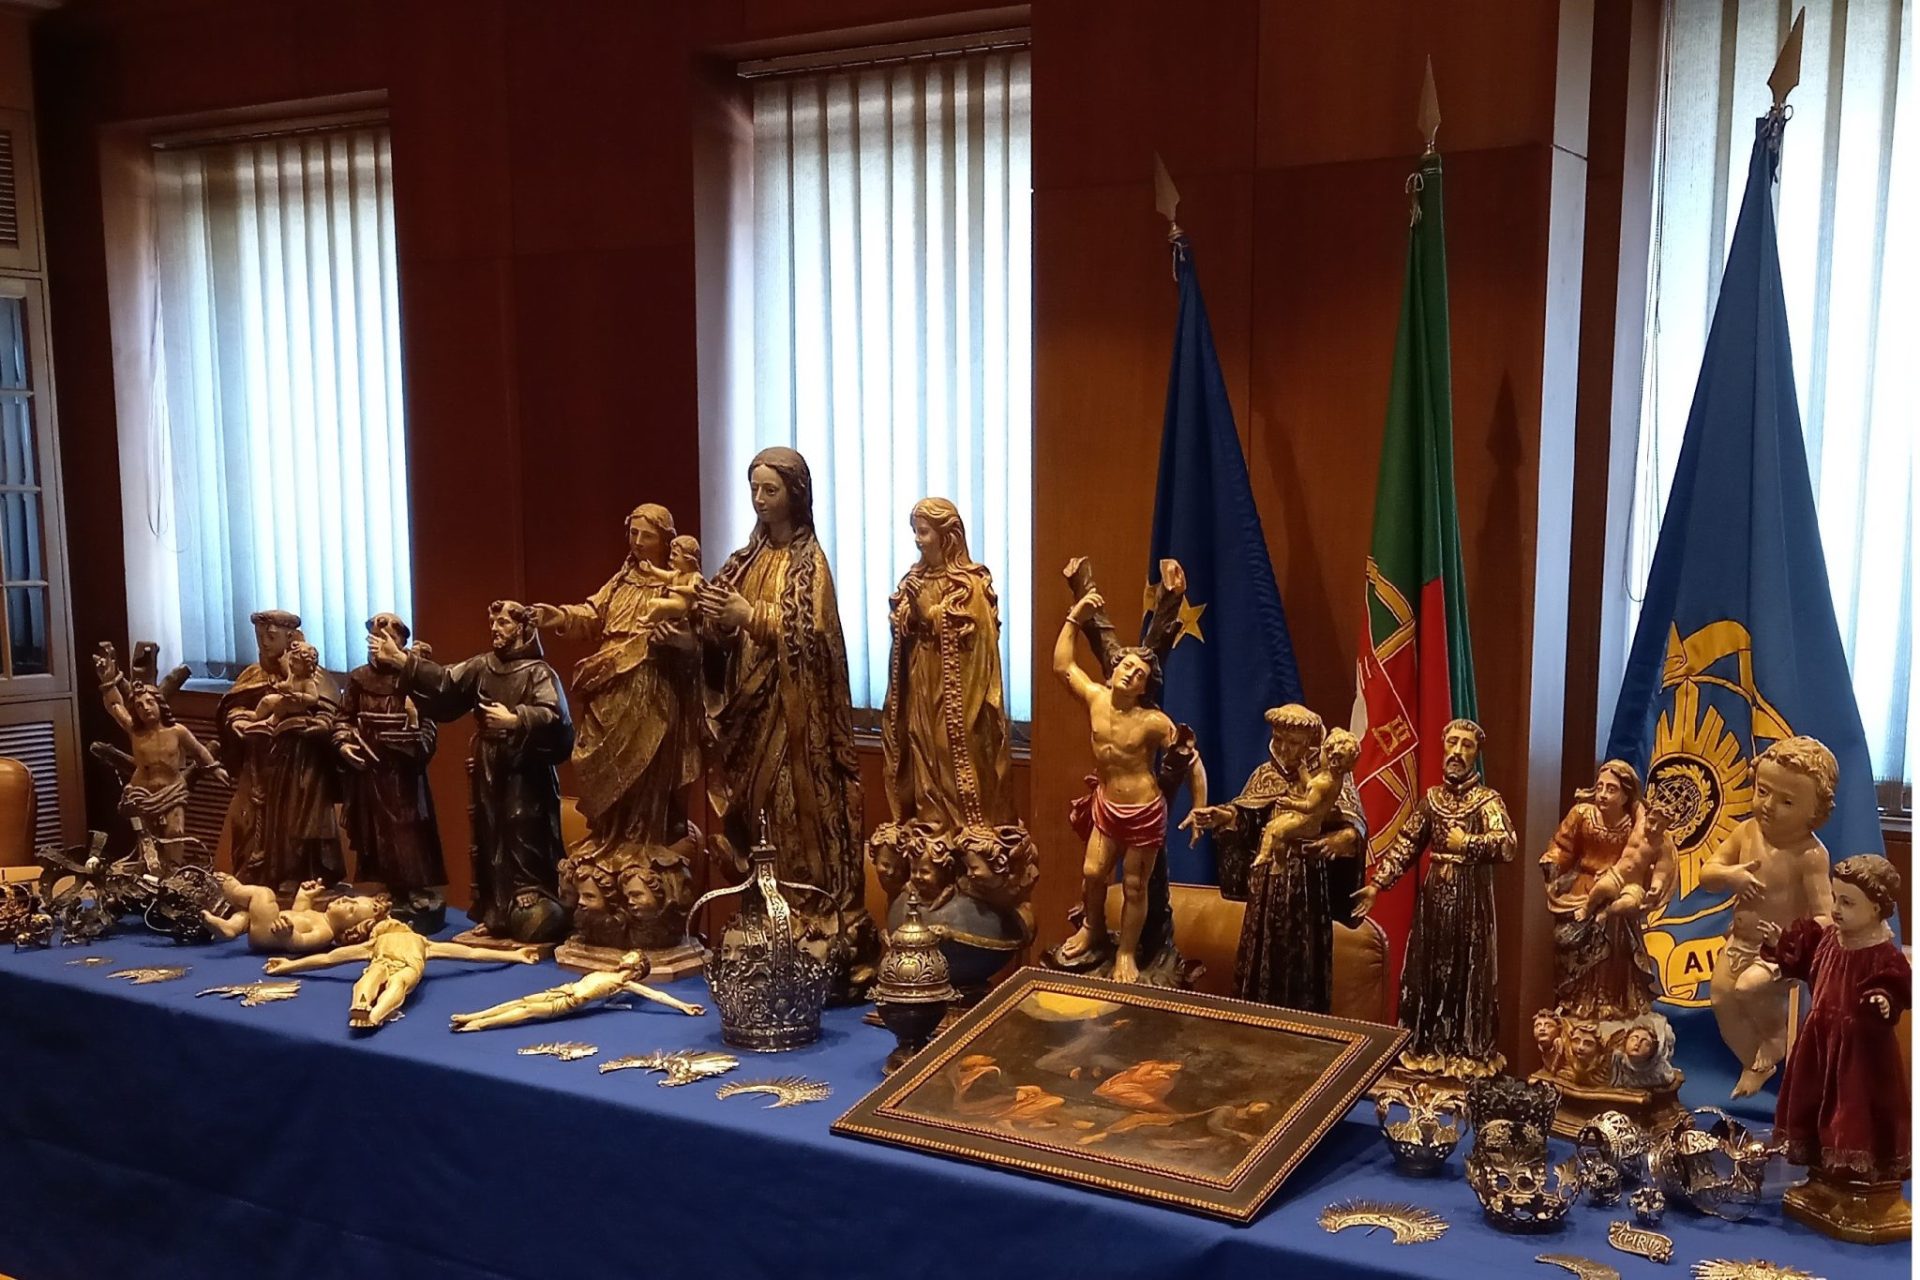 PJ recupera 40 peças de arte sacra furtadas de igrejas no valor de 150 mil euros